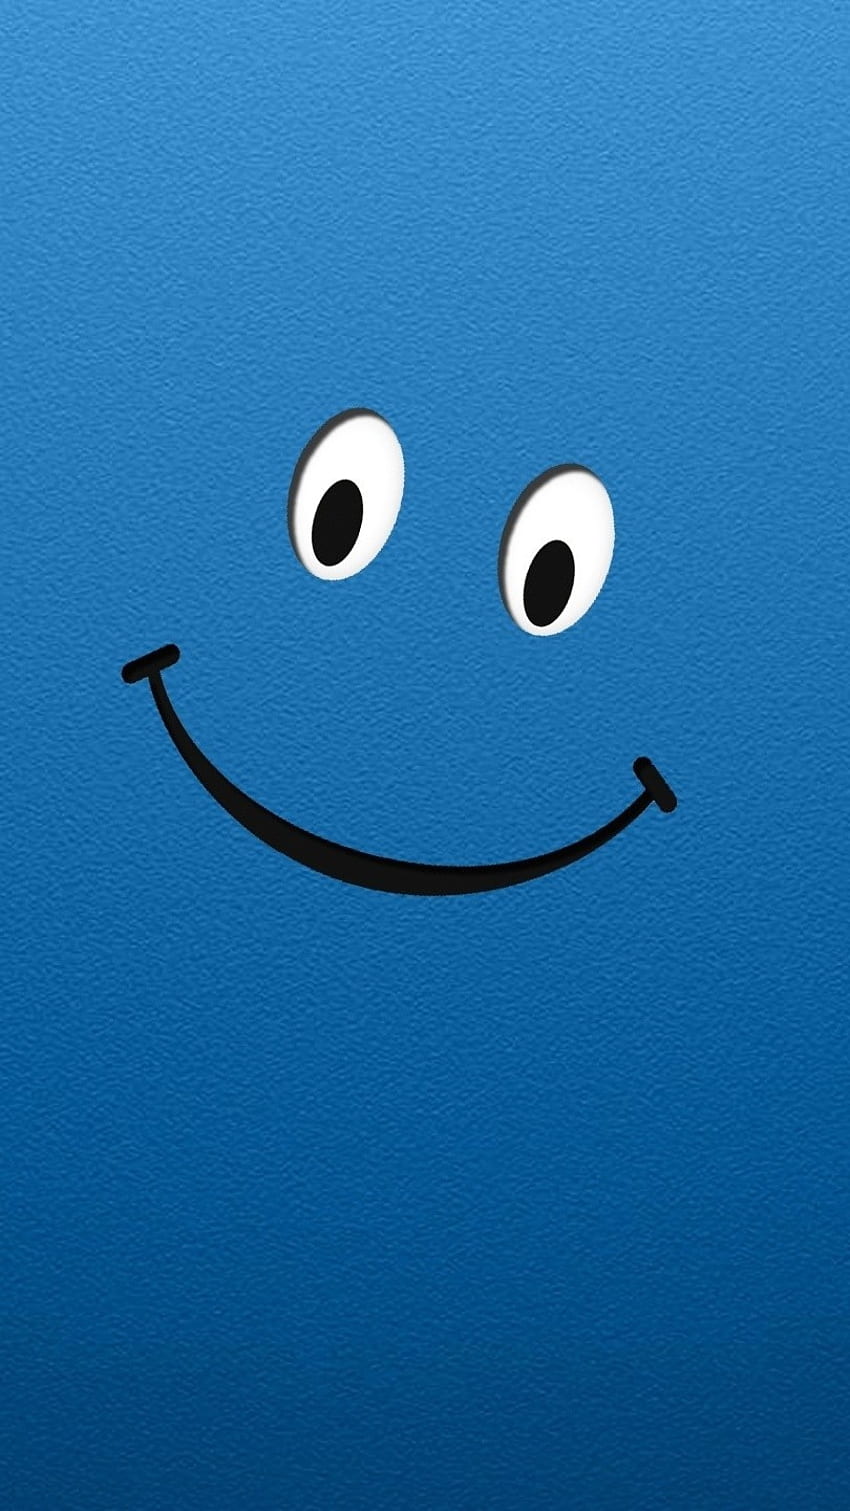 Smile Wale, Latar Belakang Biru wallpaper ponsel HD